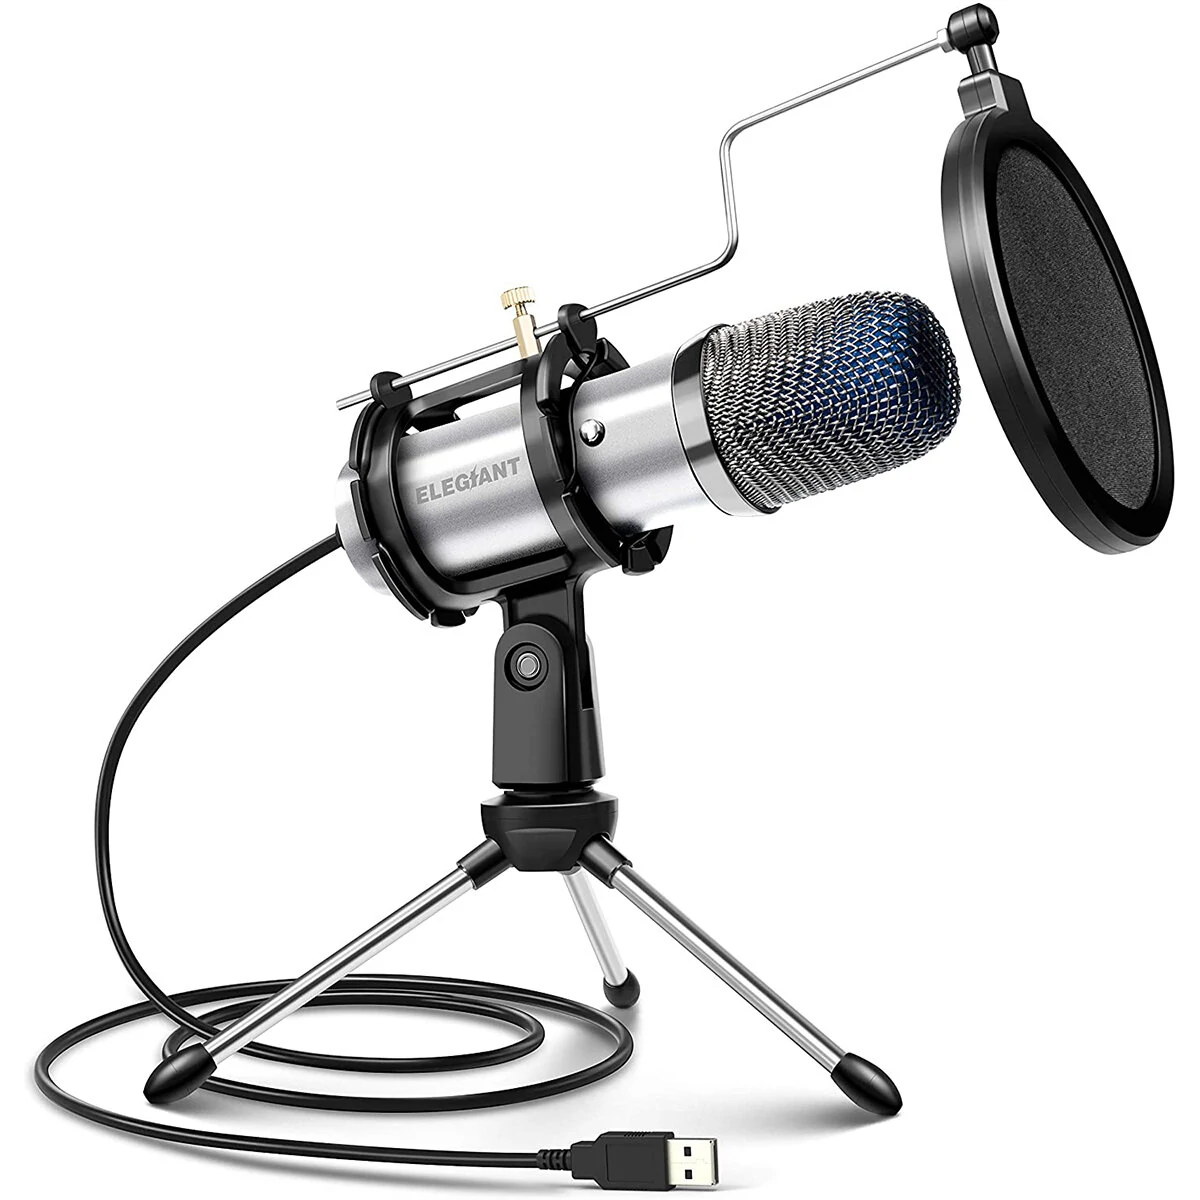 ELEGIANT EGM-04 mikrofon